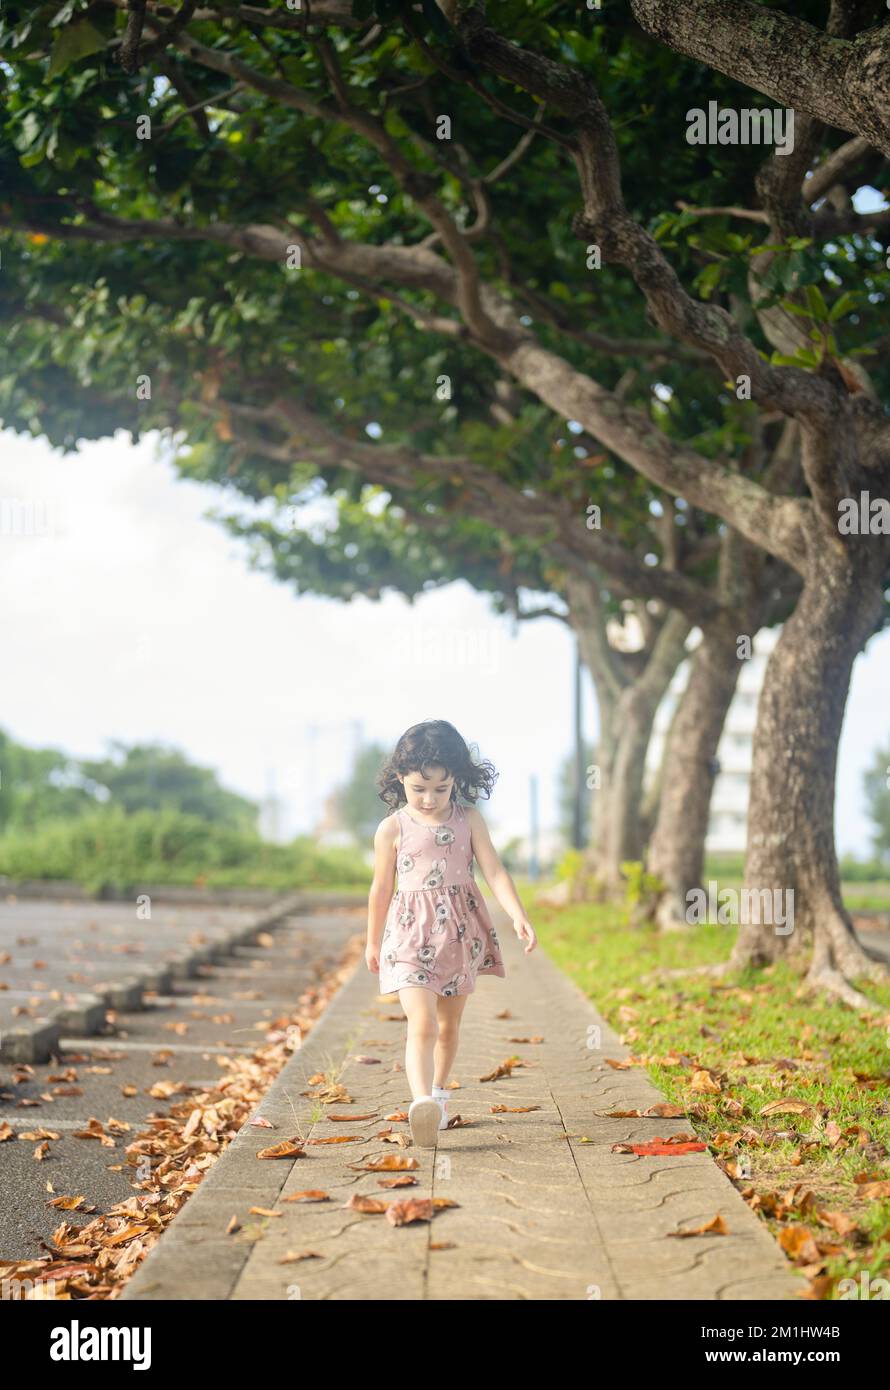 une jeune fille de 4 ans se promenant à l'automne. Banque D'Images